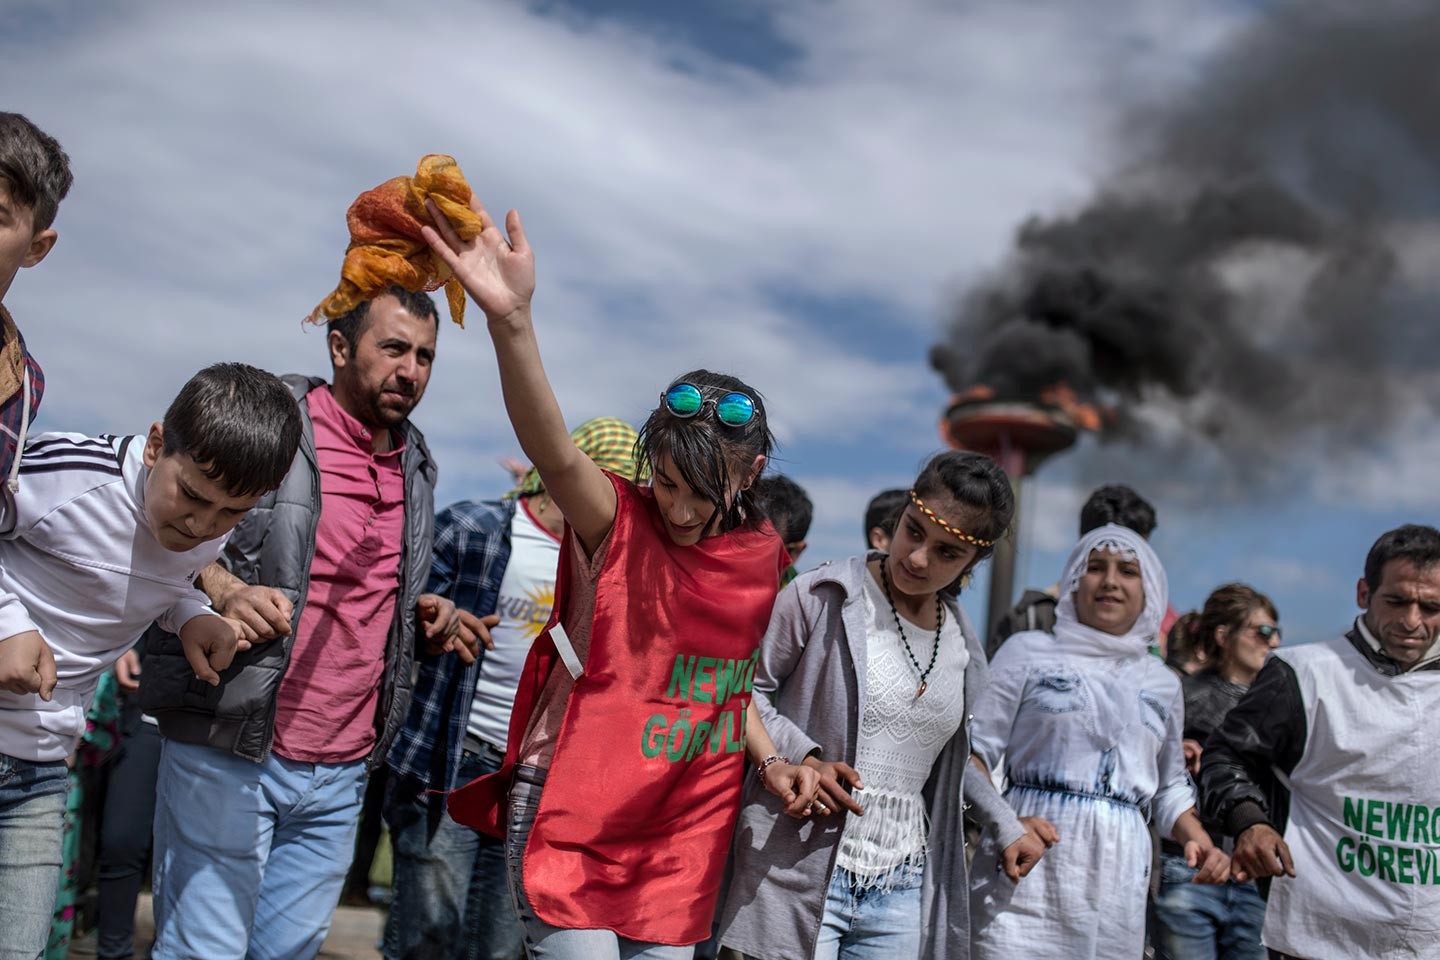 La fête inquiète des Kurdes